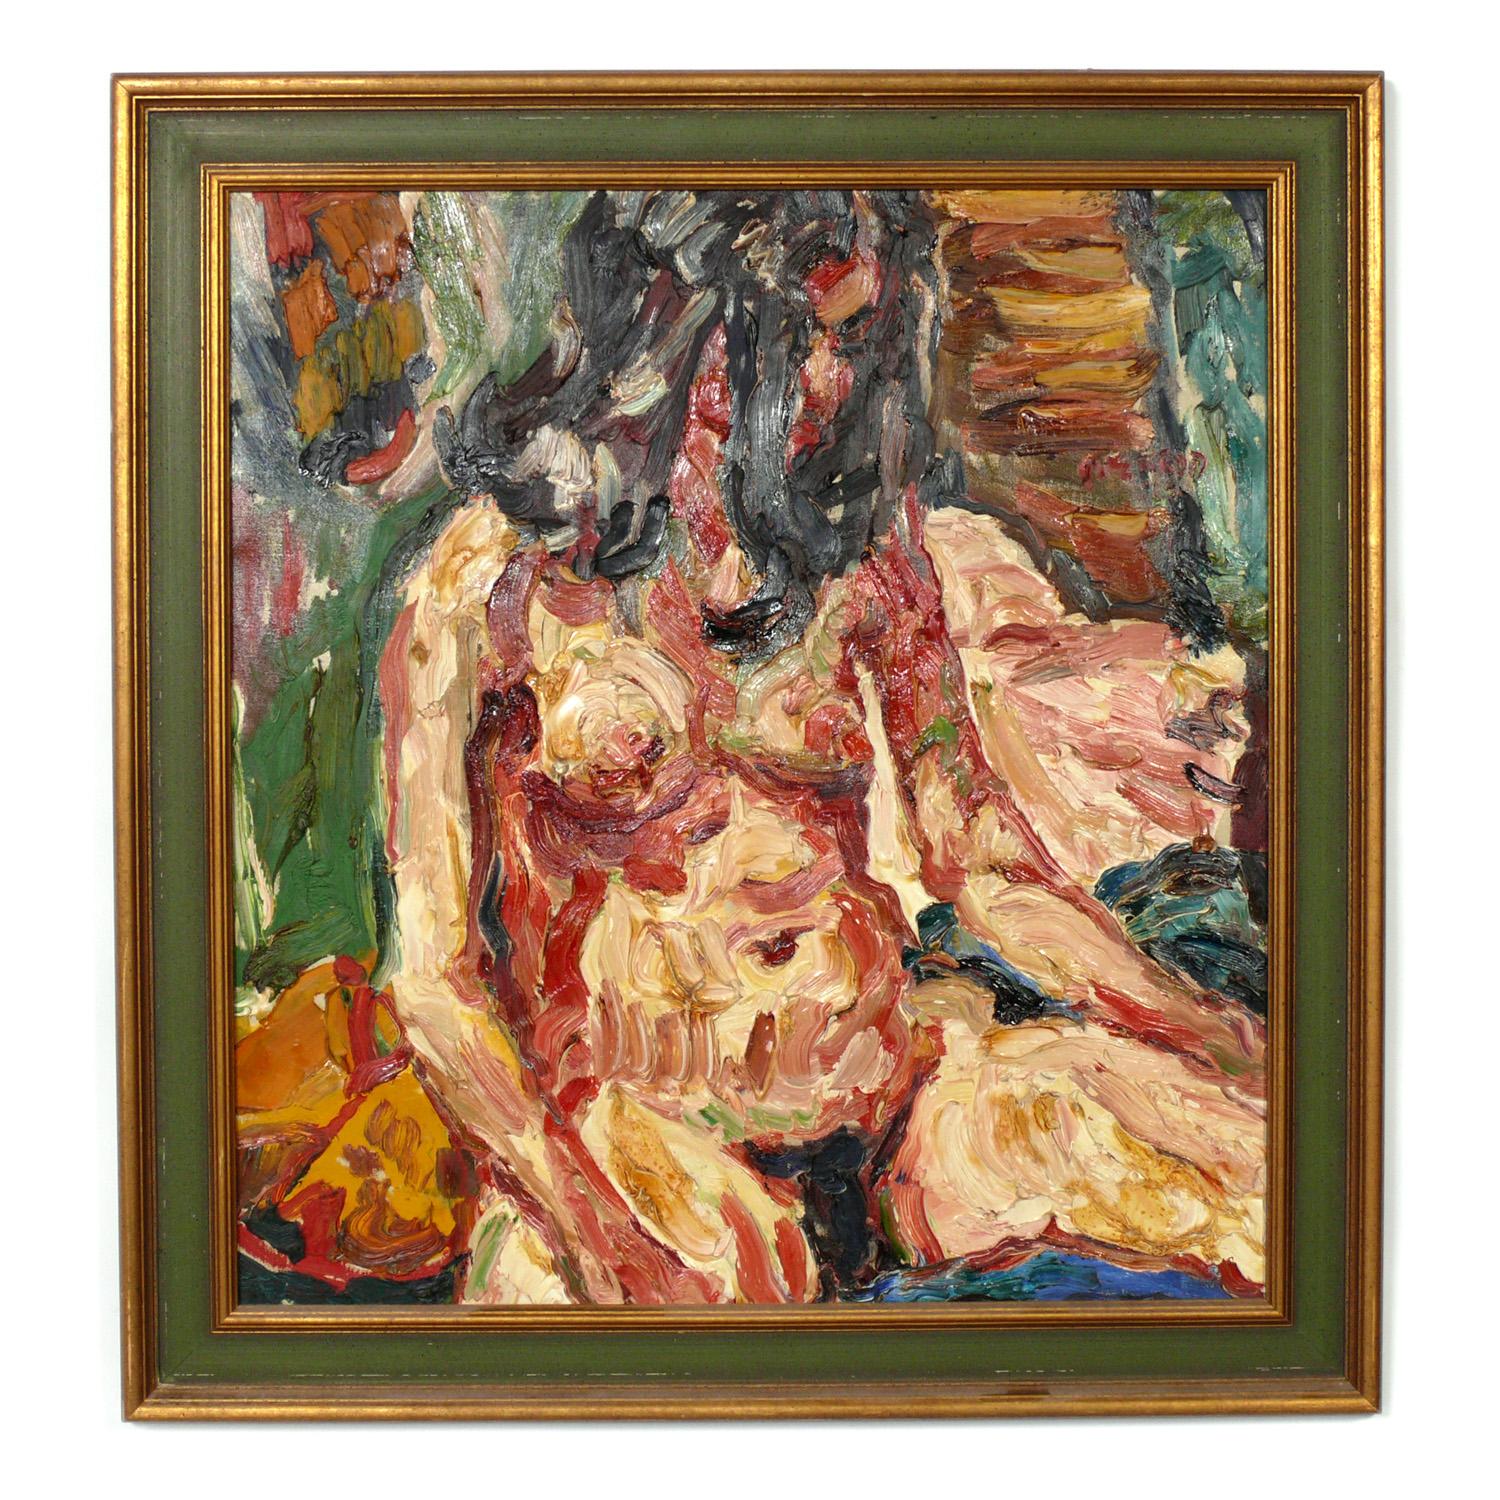 Sélection de peintures à l'huile de femmes nues de grande taille réalisées par Philip Sherrod, américain, vers les années 1960. Superbe technique d'empâtement épais.
De gauche à droite, comme on le voit sur la première photo, ils mesurent :
1) 33